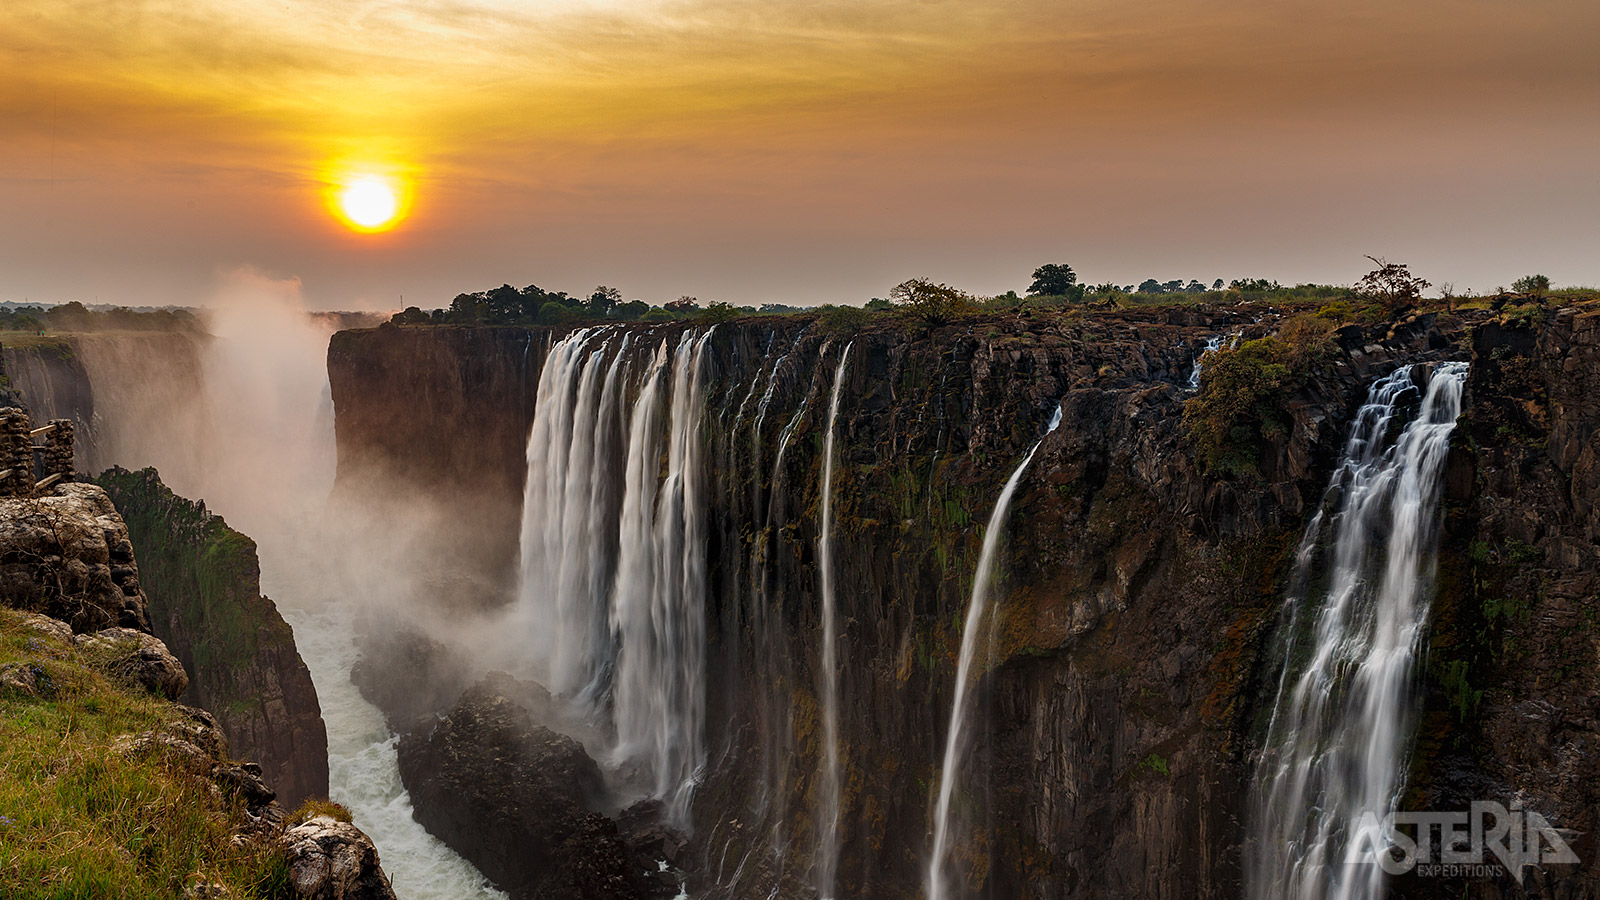 De Victoria-watervallen zijn de breedste van Afrika en vormen een watergordijn van 1.700m breed en 100m hoog